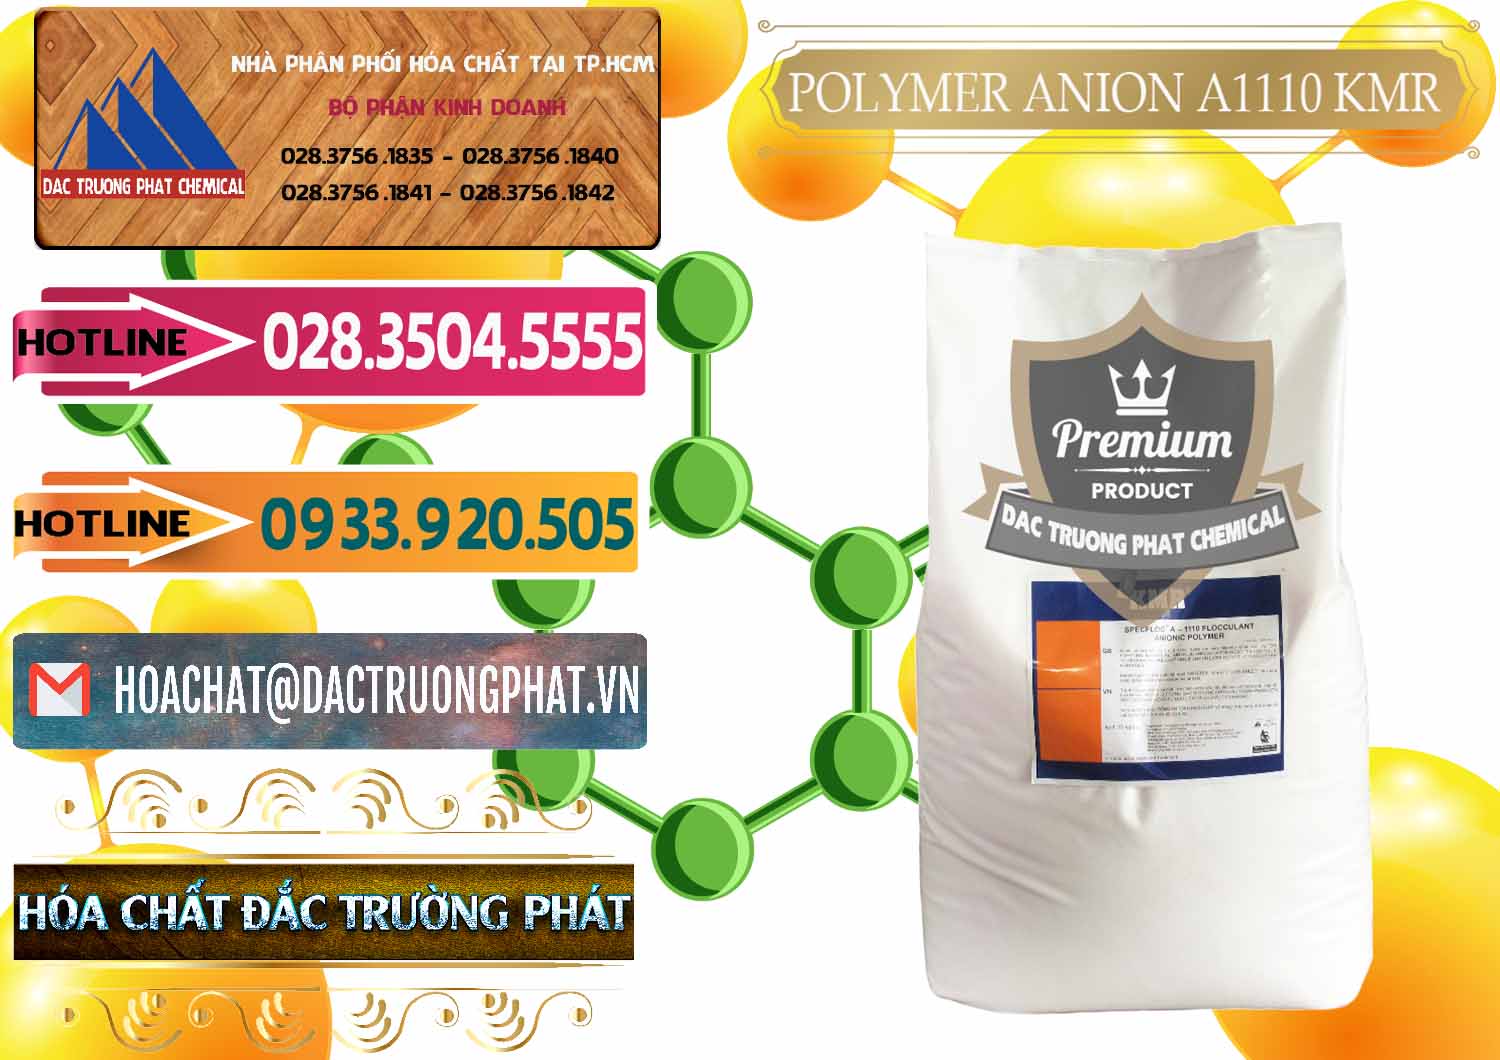 Nơi cung ứng và bán Polymer Anion A1110 - KMR Anh Quốc England - 0118 - Chuyên phân phối ( bán ) hóa chất tại TP.HCM - dactruongphat.vn